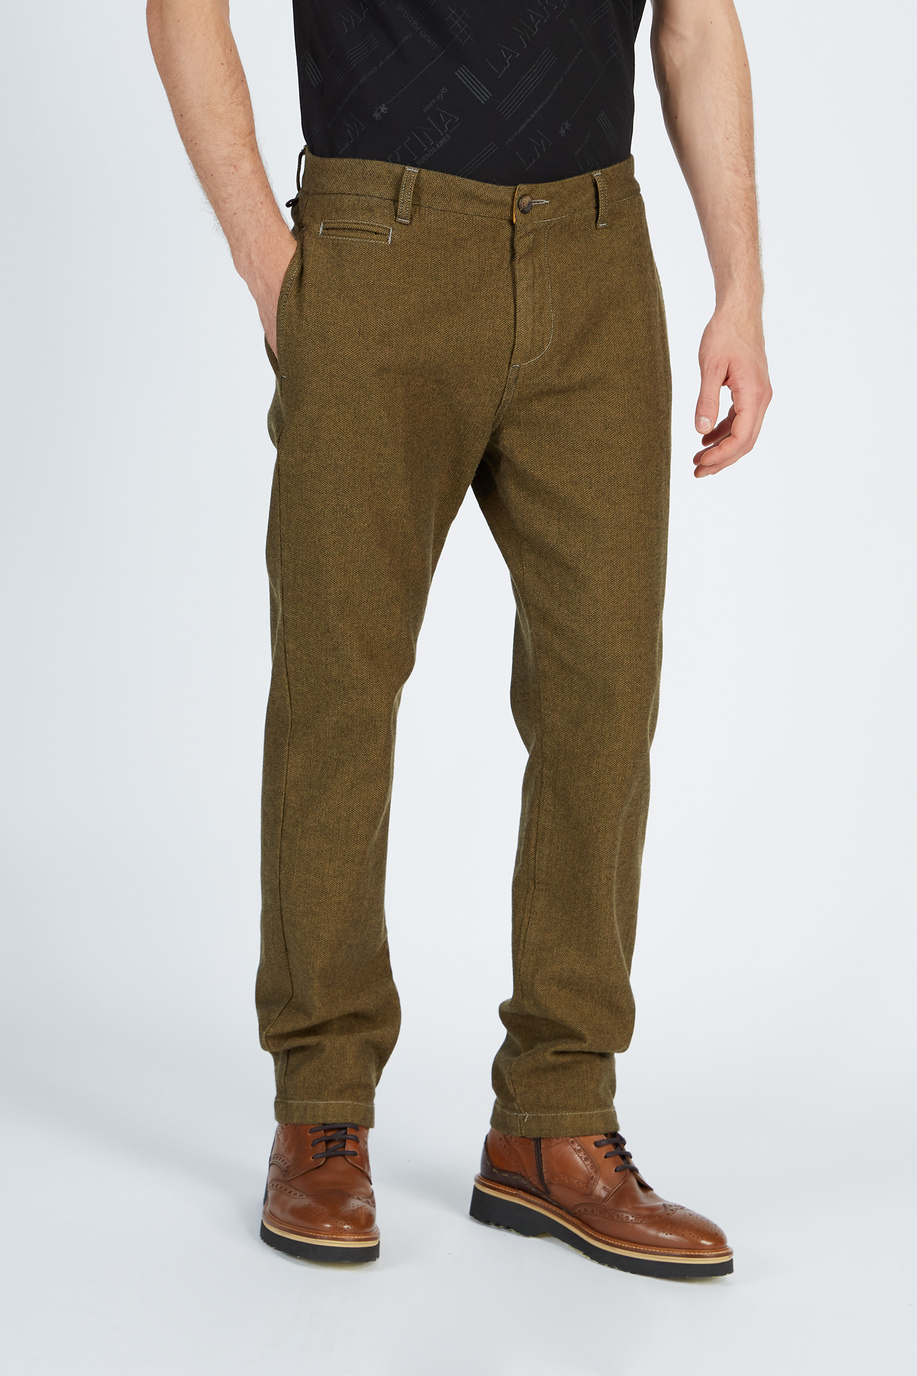 Pantalone da uomo modello 5 tasche in cotone regular fit - Preview  | La Martina - Official Online Shop